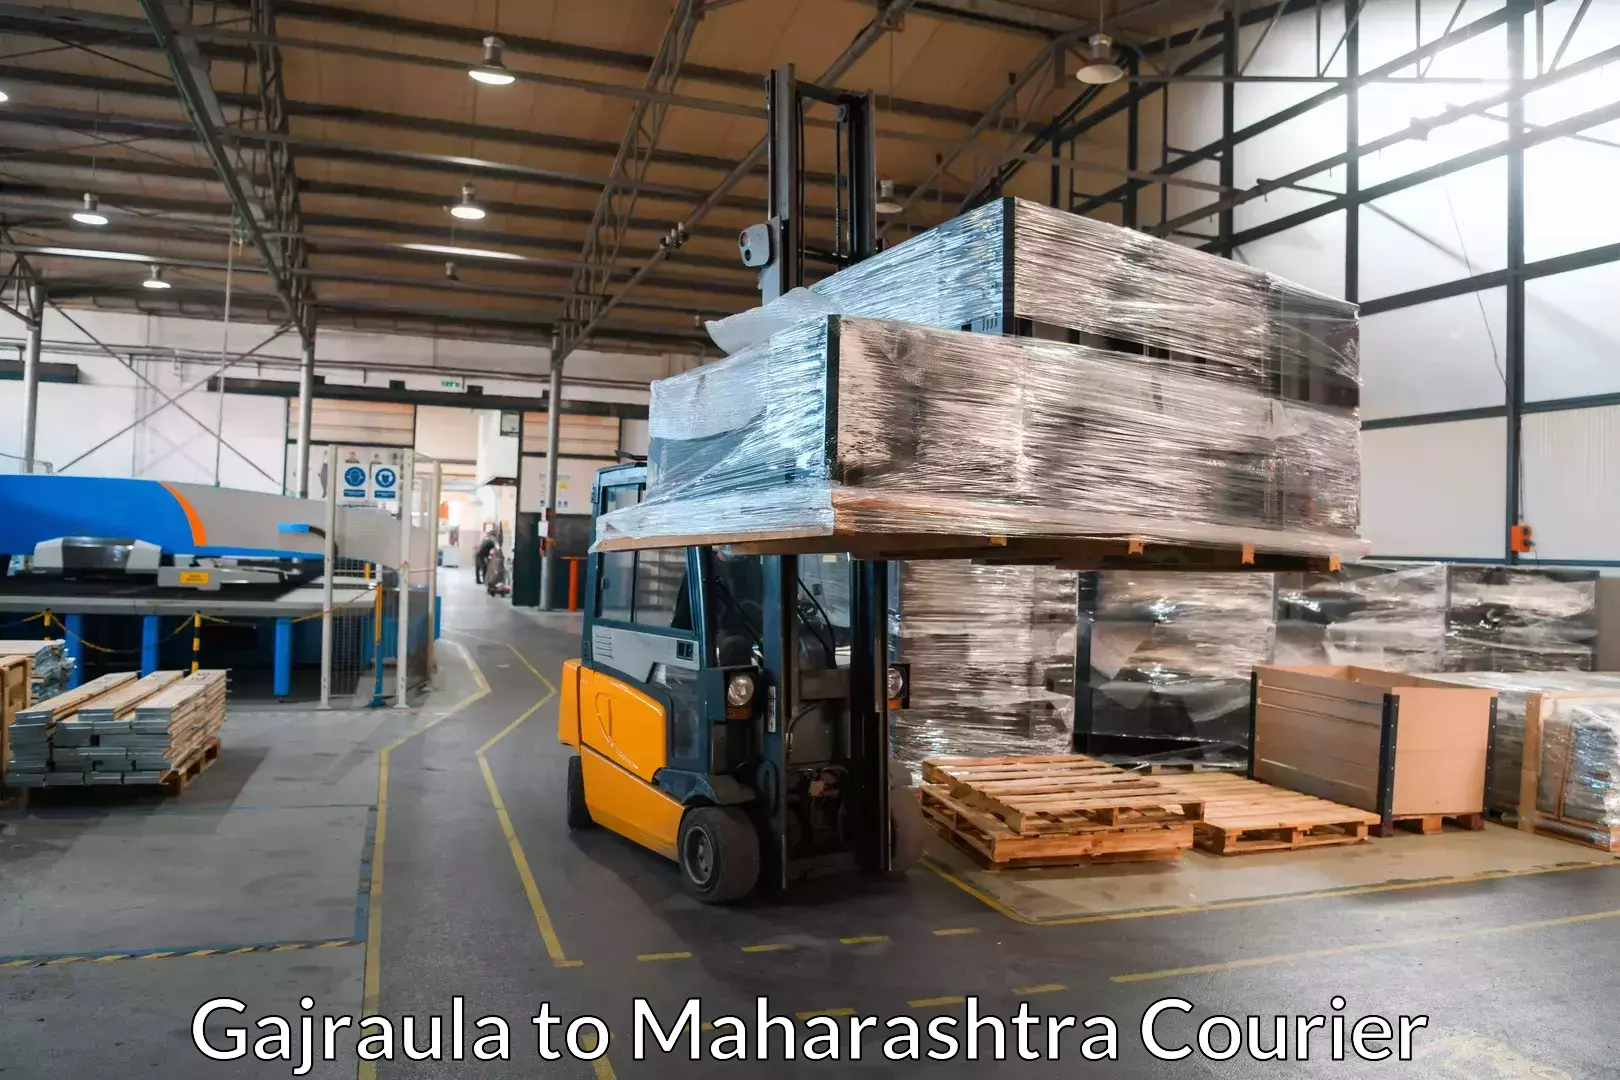 Professional moving company in Gajraula to Maharashtra